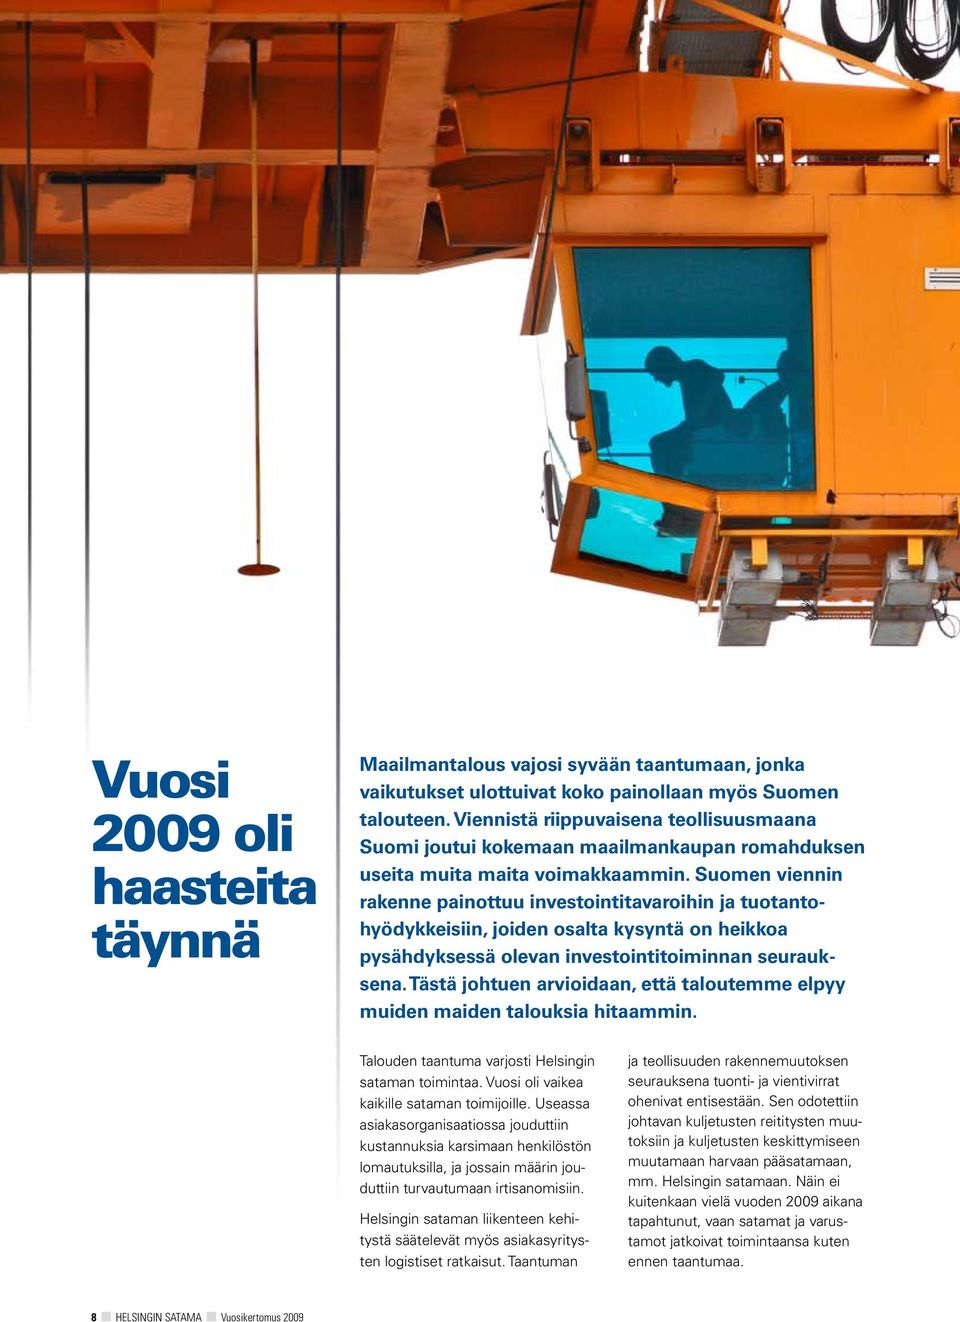 Suomen viennin rakenne painottuu investointitavaroihin ja tuotantohyödykkeisiin, joiden osalta kysyntä on heikkoa pysähdyksessä olevan investointitoiminnan seurauksena.